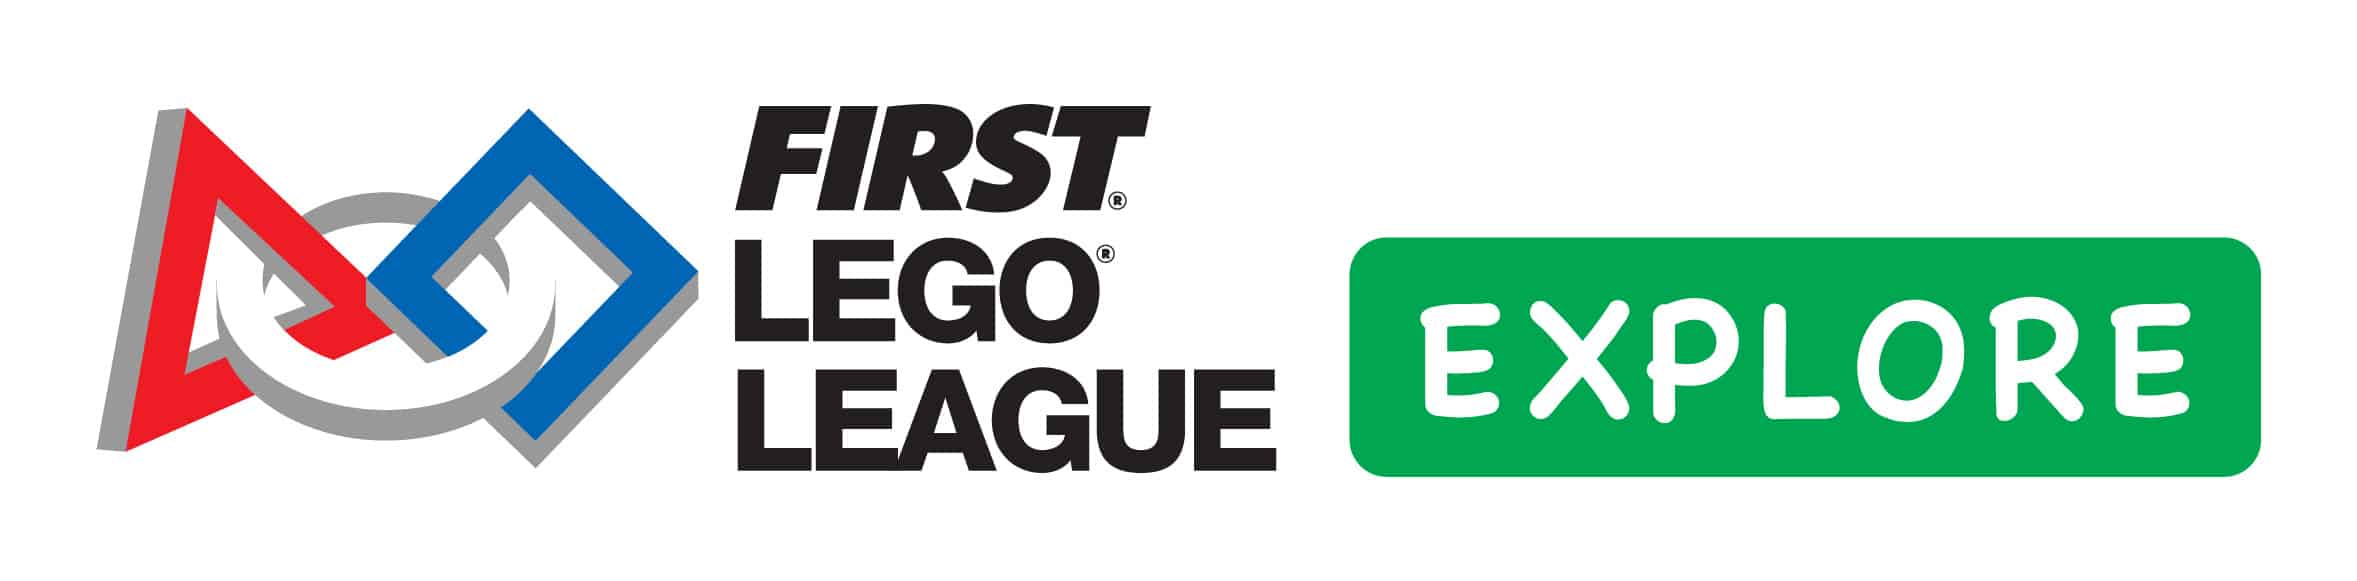 FIRST LEGO League Explore logo